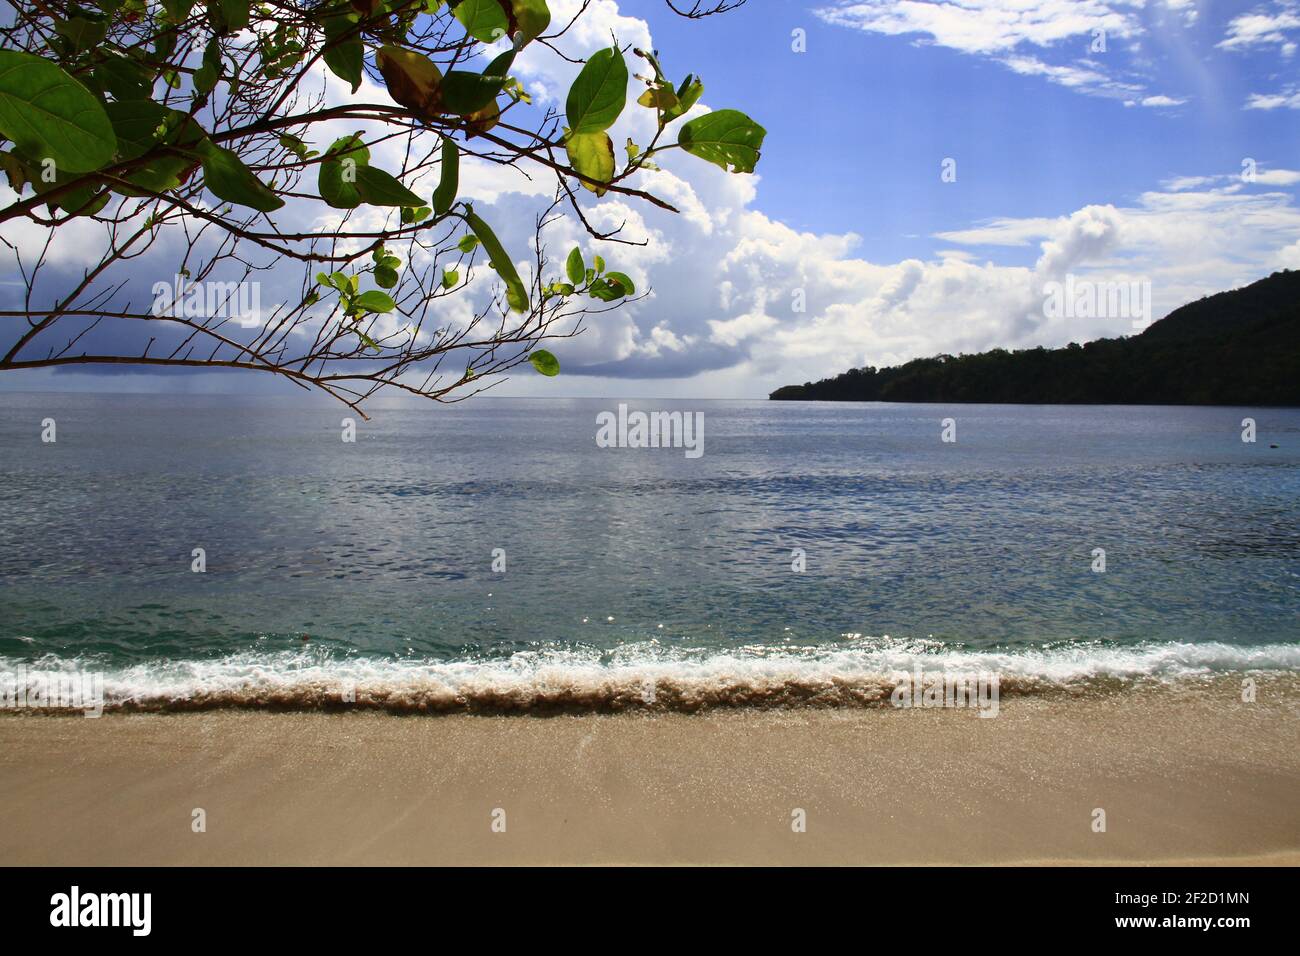 Eine wunderschöne Landschaft am Pulisan Beach in Minahasa Utara, Indonesien Stockfoto